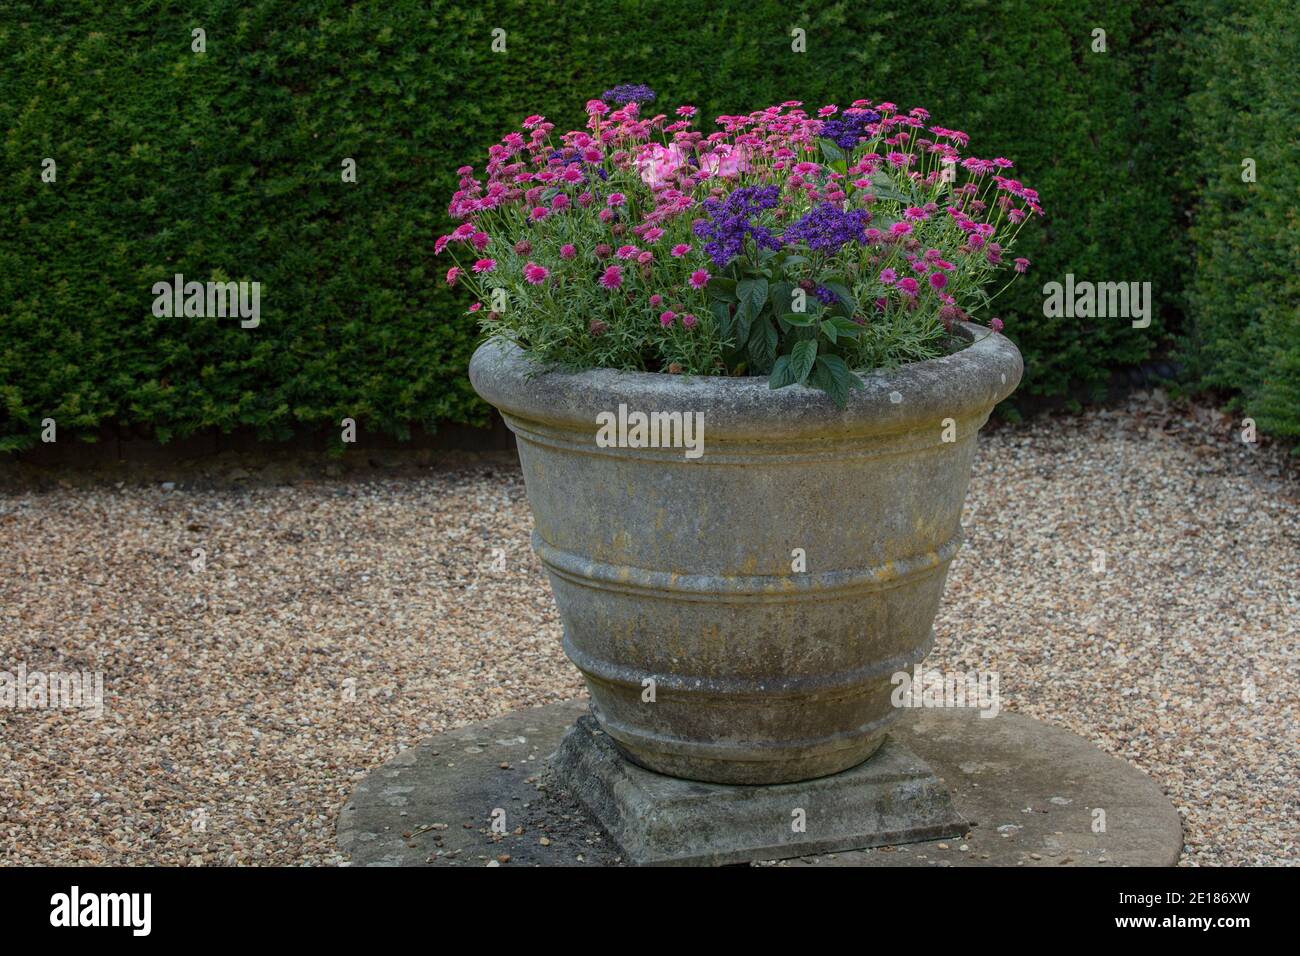 Steintopf mit Sommer blühenden Pflanzen im Kiesgarten gesehen  Stockfotografie - Alamy